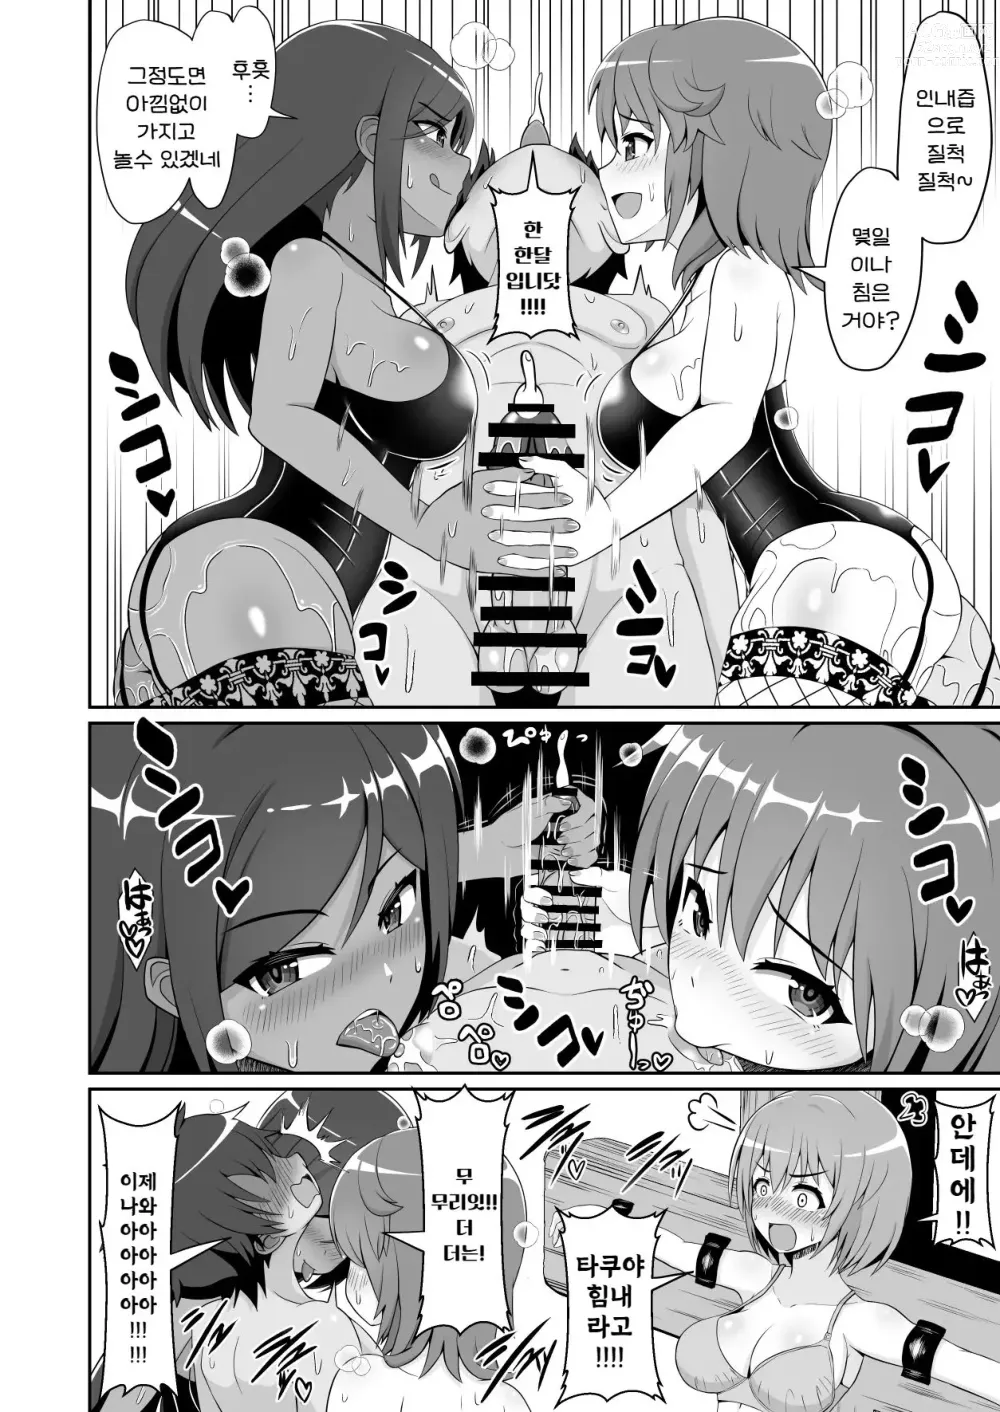 Page 5 of doujinshi 굉장한 테크닉을 갖춘 여배우들에게 범해져서 100분 내구성으로 그녀를 구하는 기획에 도전해 보았다!